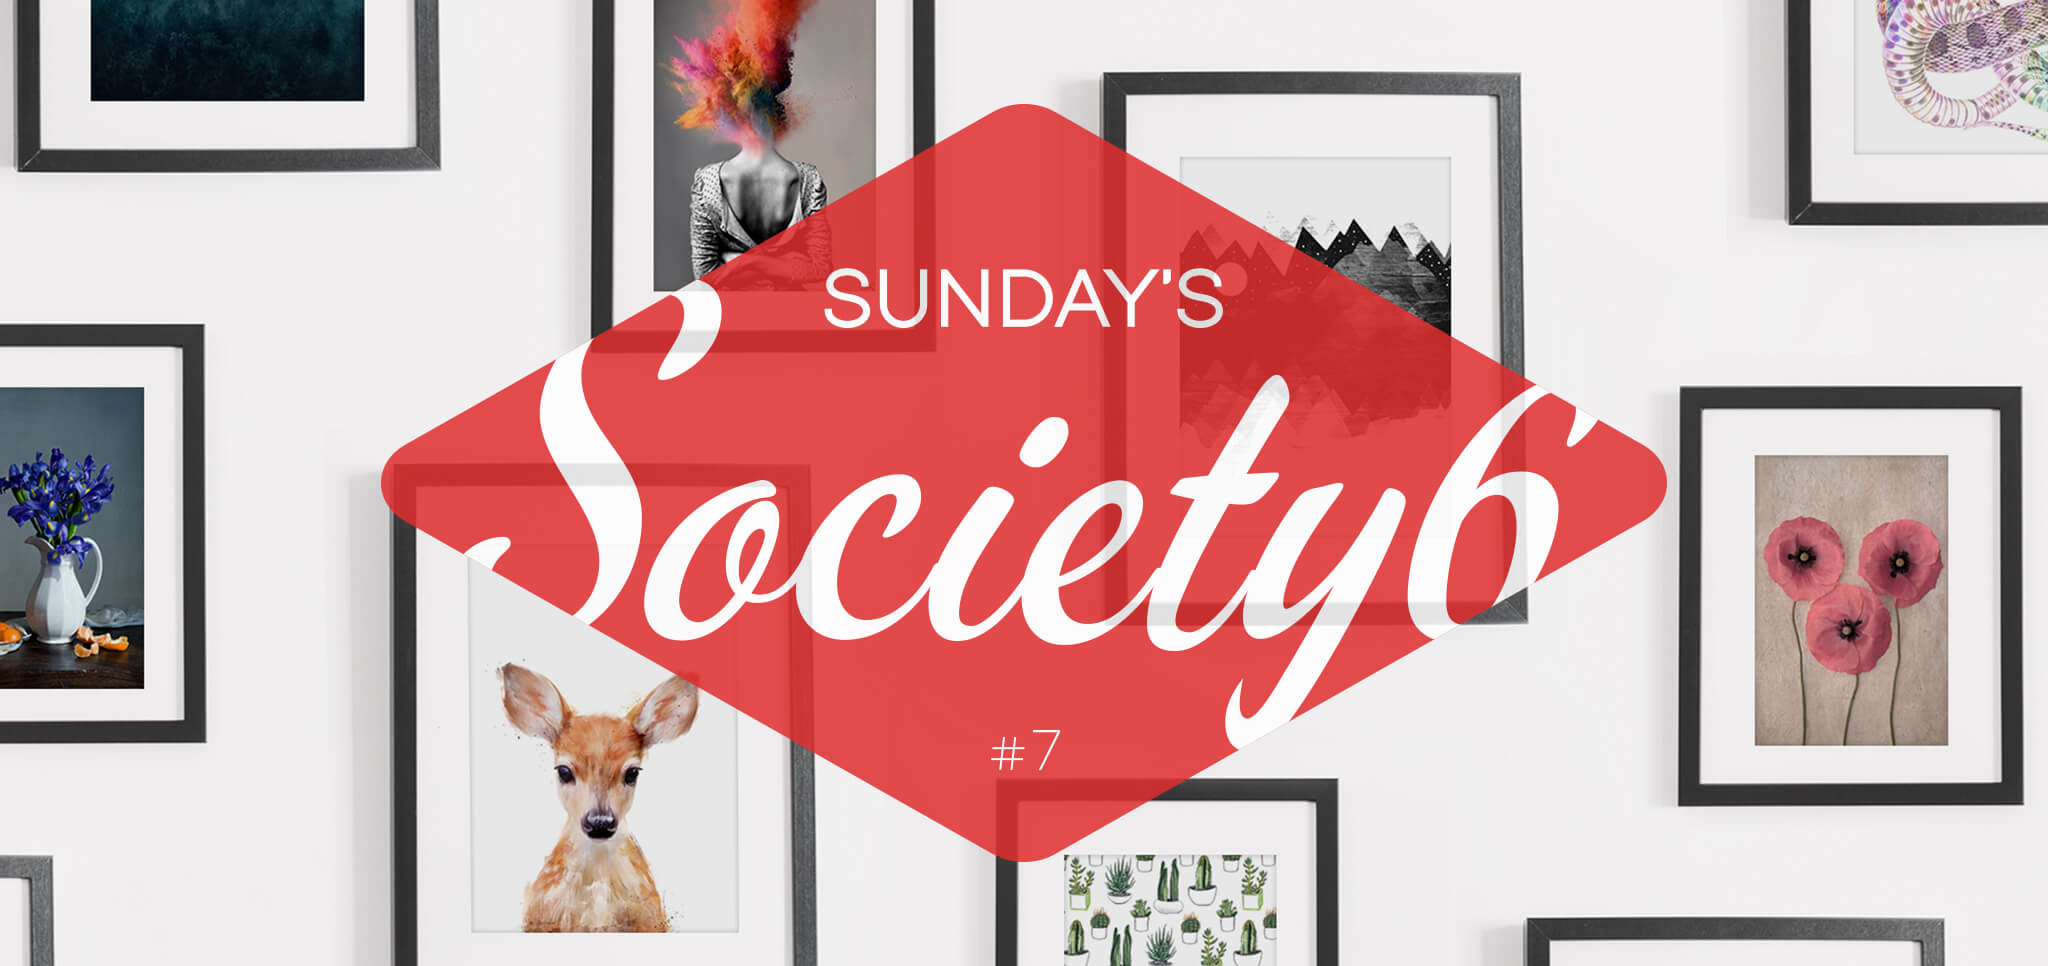 Sunday’s Society6 – #7